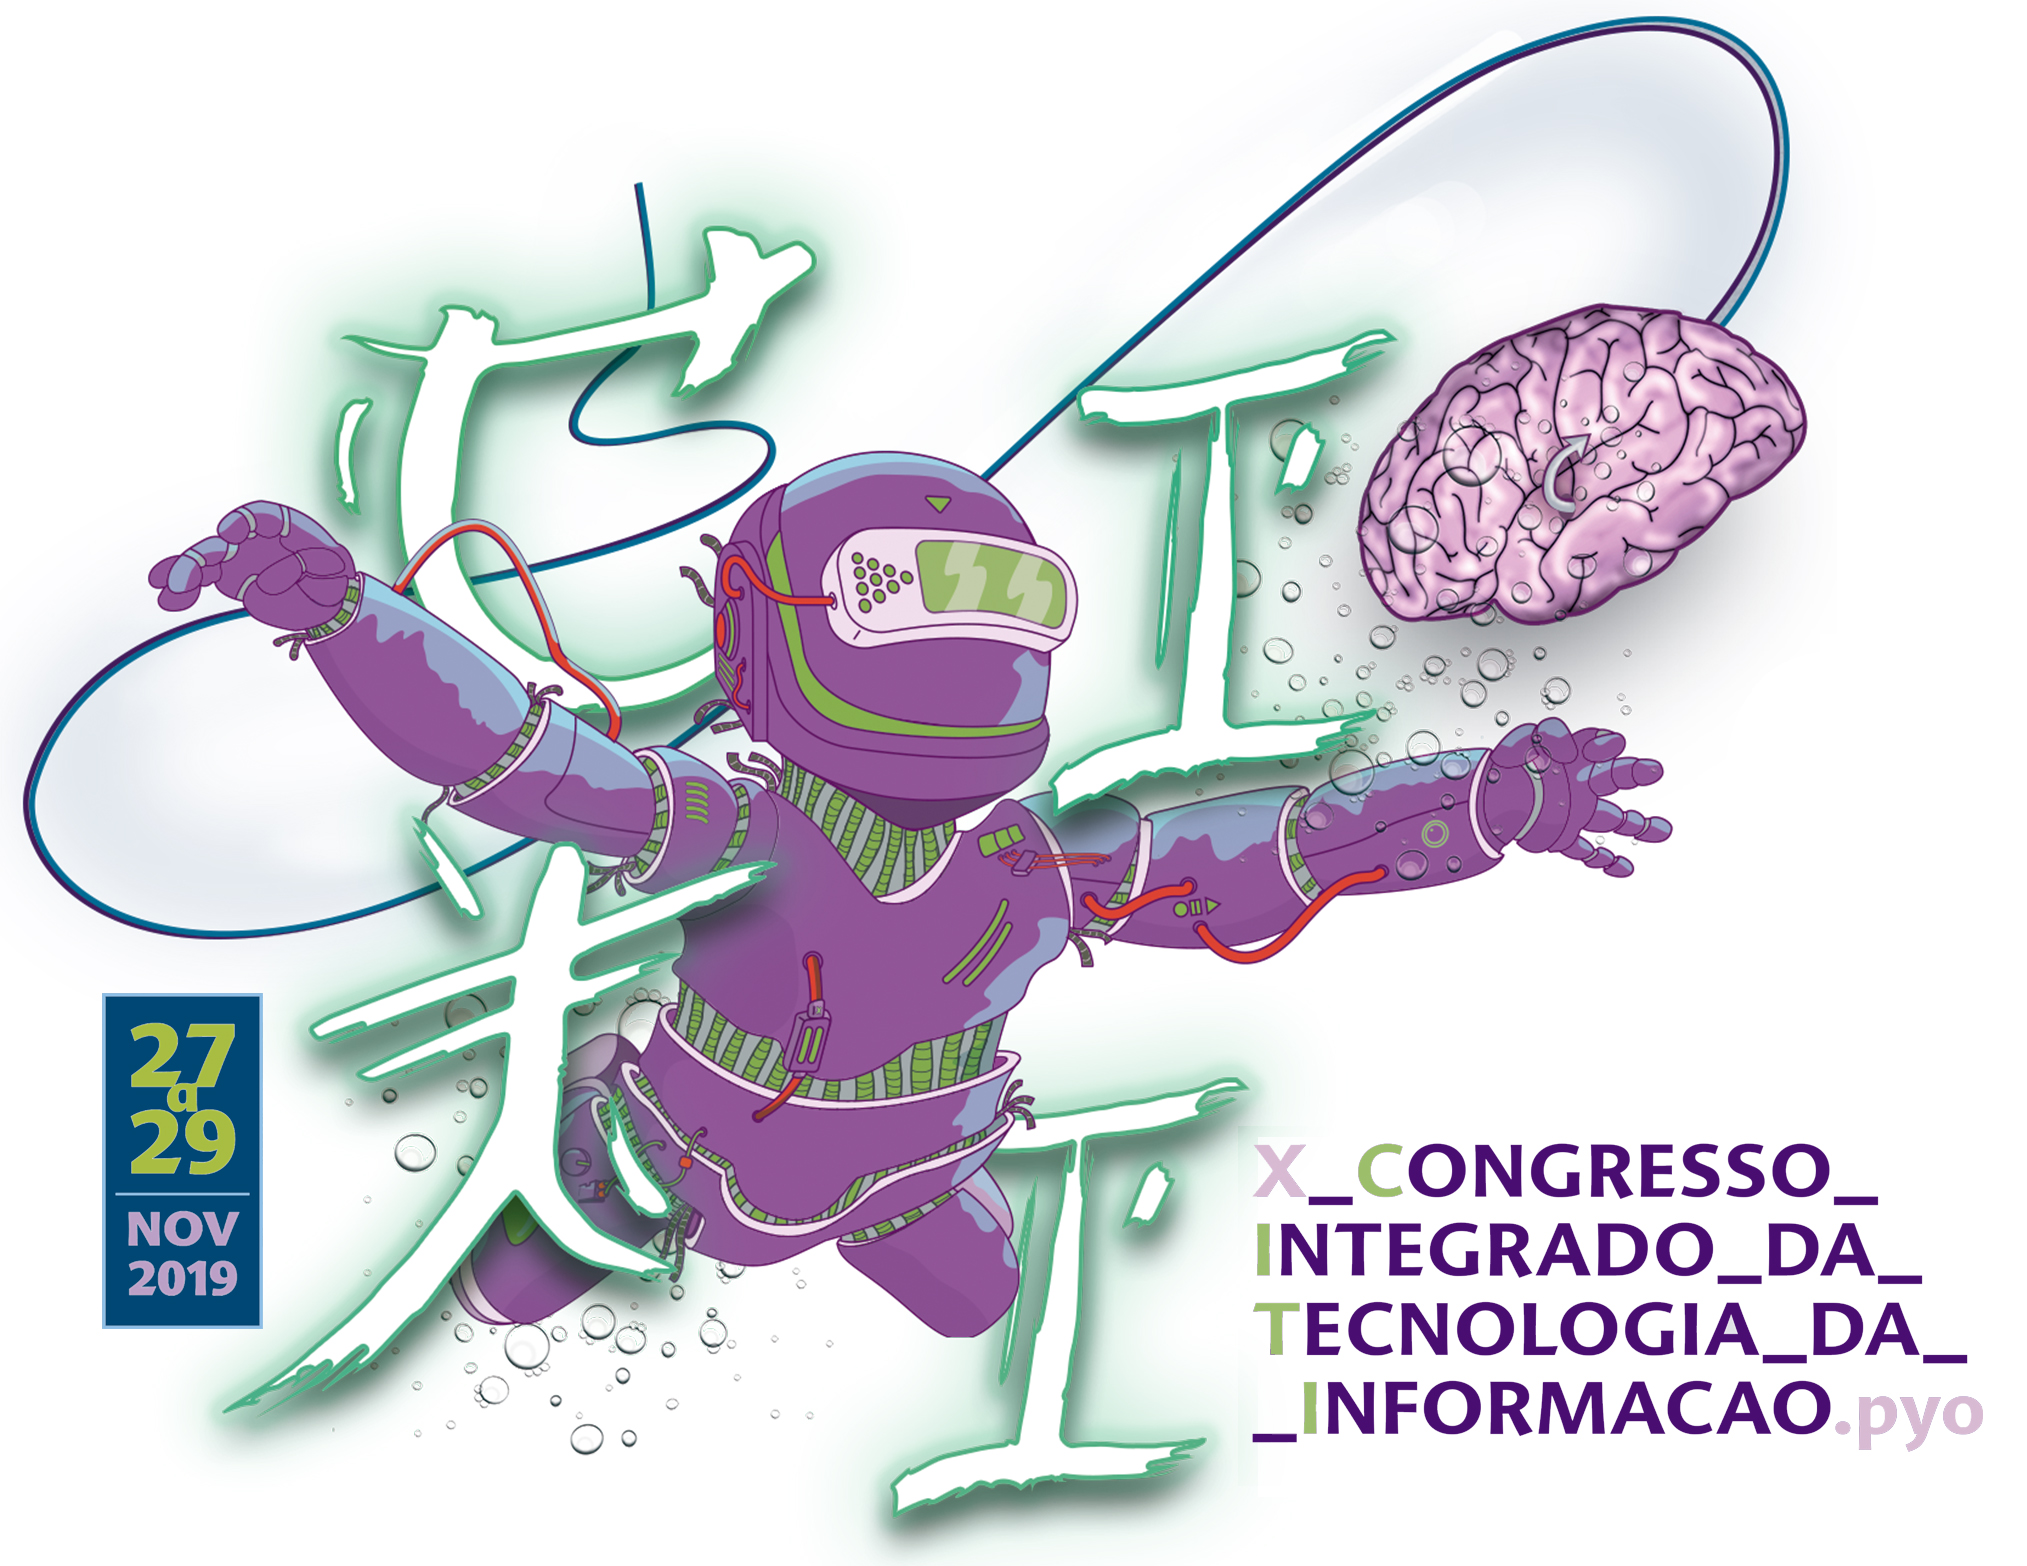 					Visualizar 2019: X CITI - Congresso Integrado de Tecnologia da Informação
				